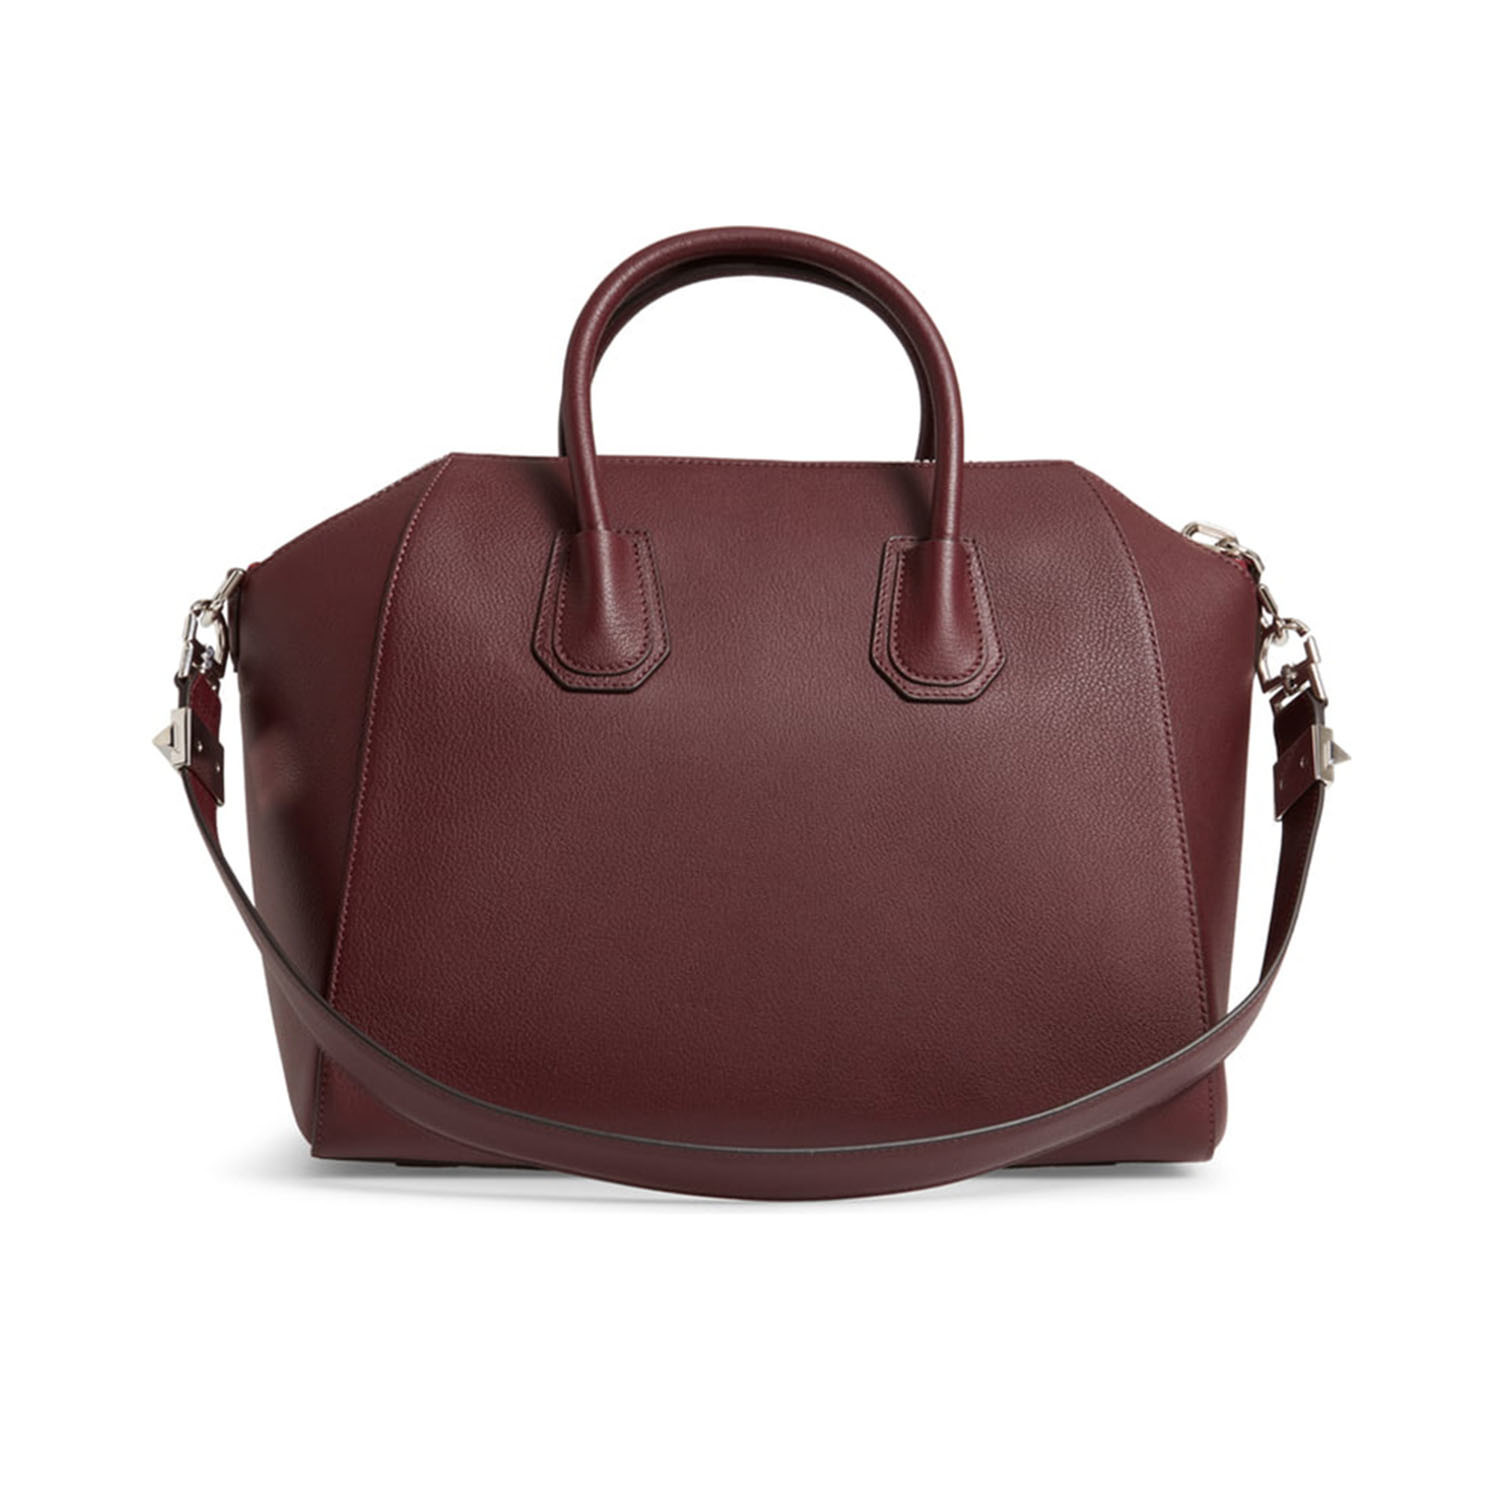 Givenchy // Leather Antigona Medium Satchel Handbag // Burgundy - Stella McCartney & Givenchy ...